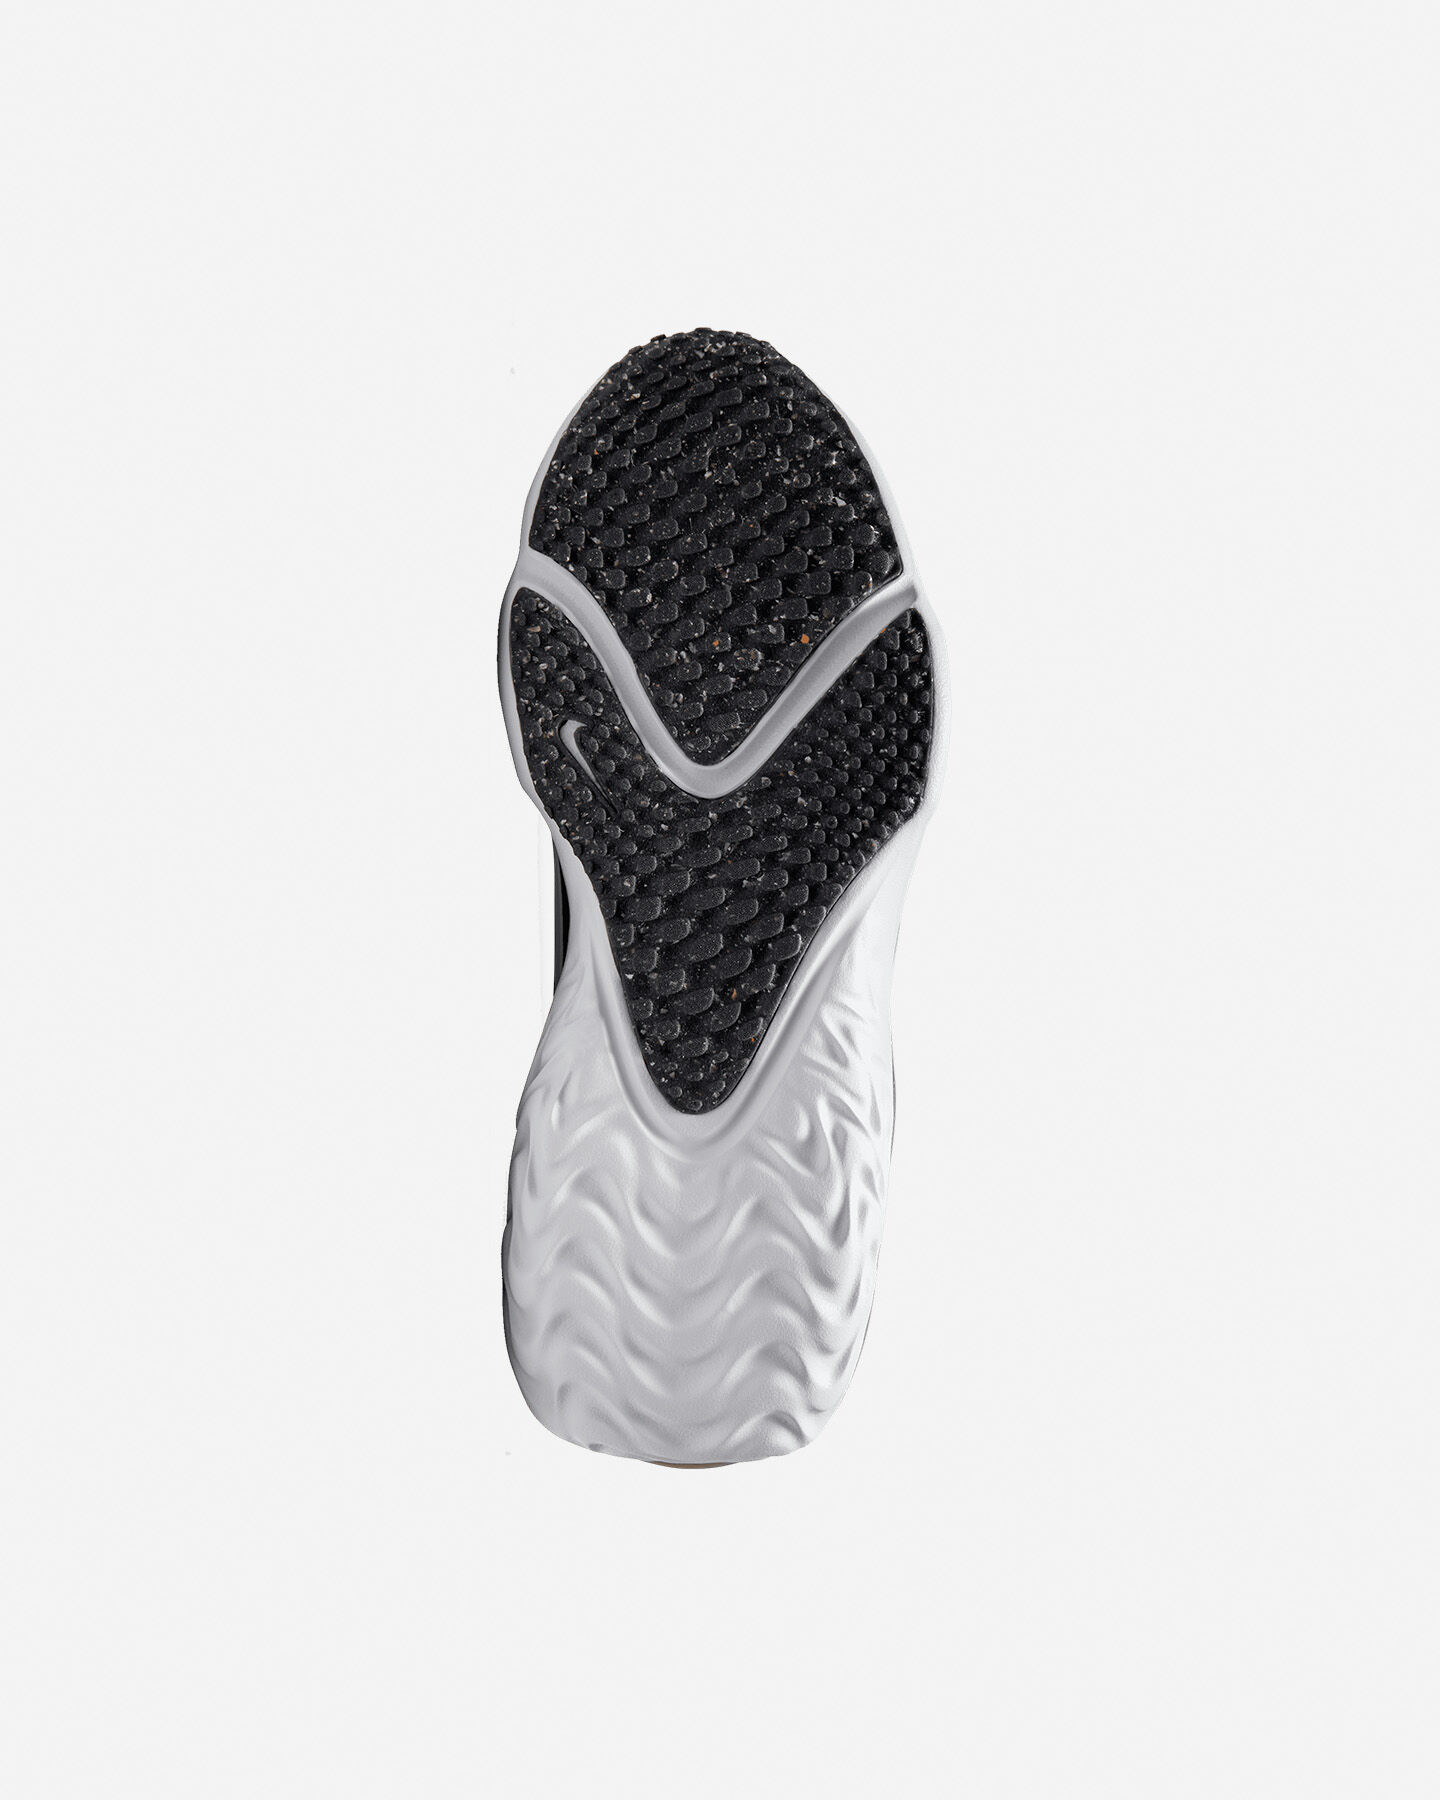  Scarpe sneakers NIKE RUN FLOW GS JR S5539553|001|5Y scatto 2